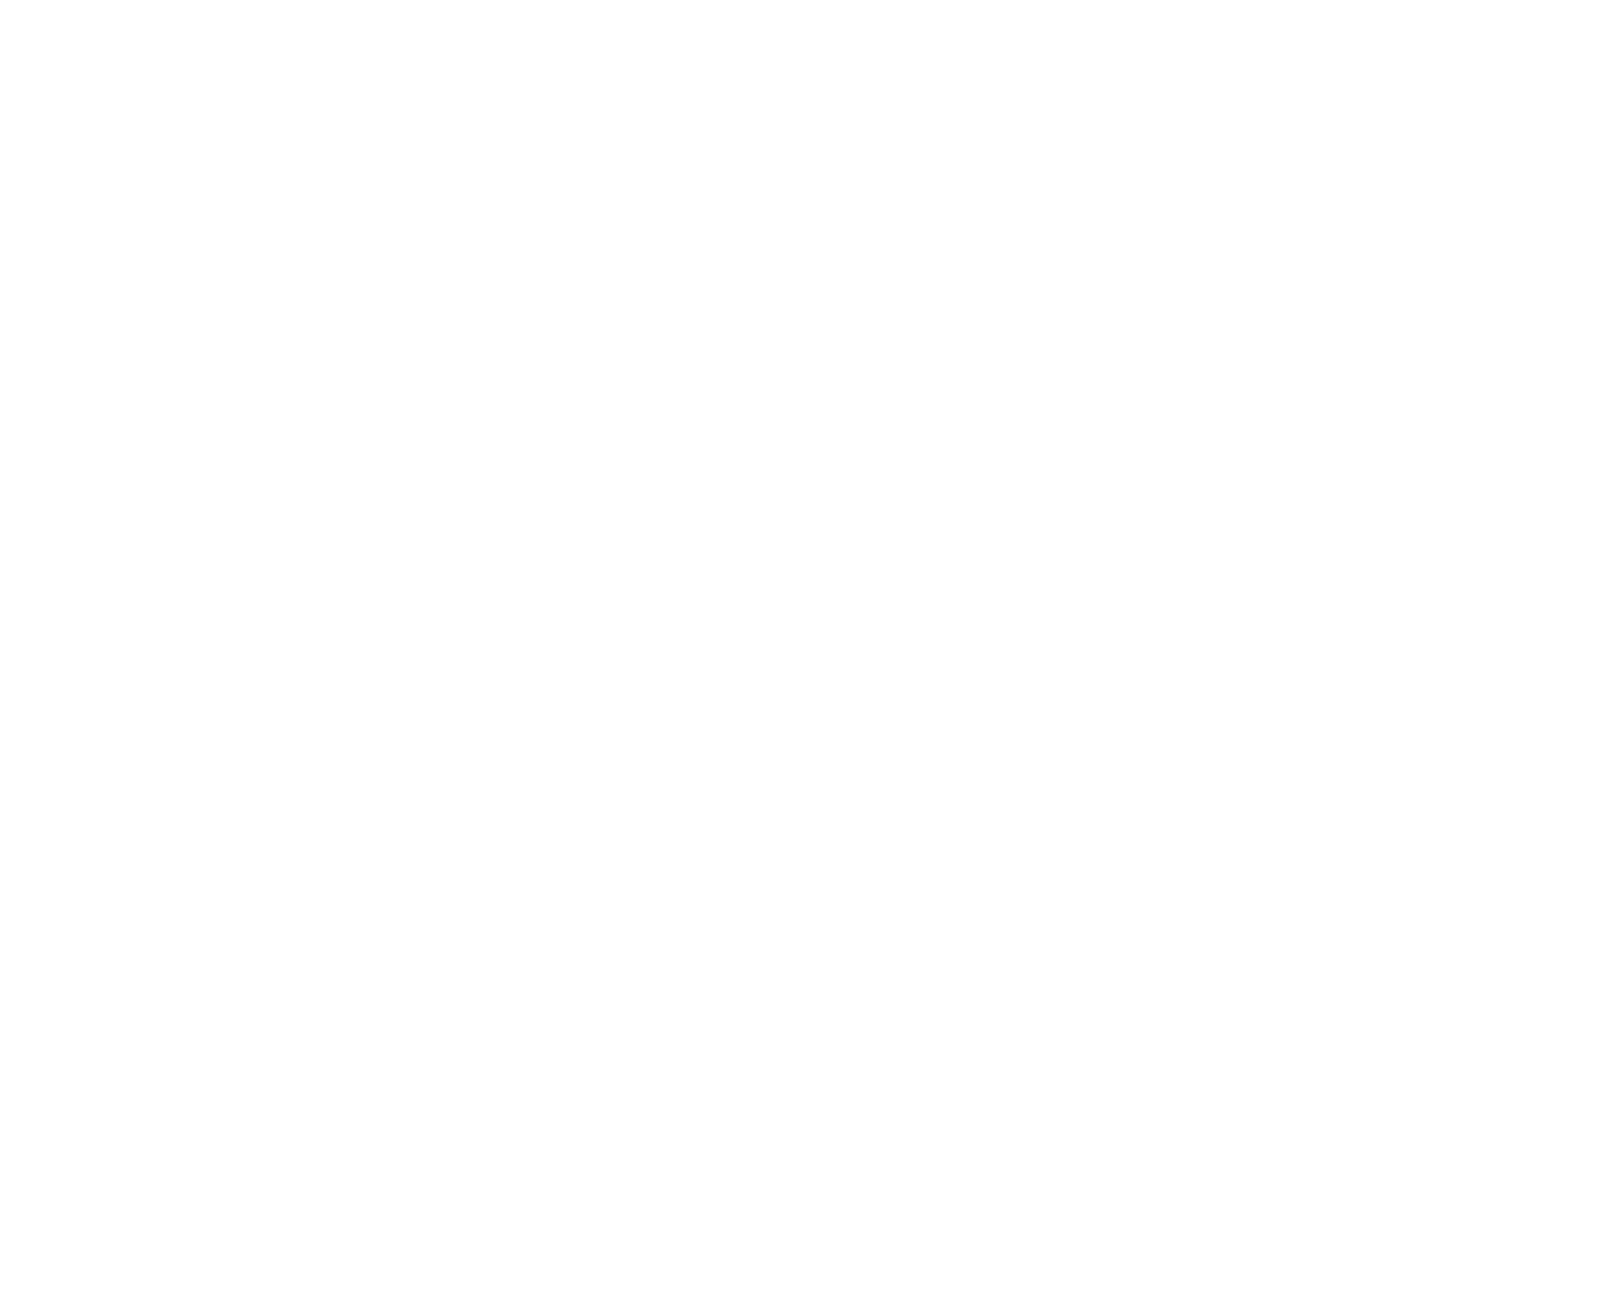 grnk-shop-logo-gronkh-referenz-ultim8media